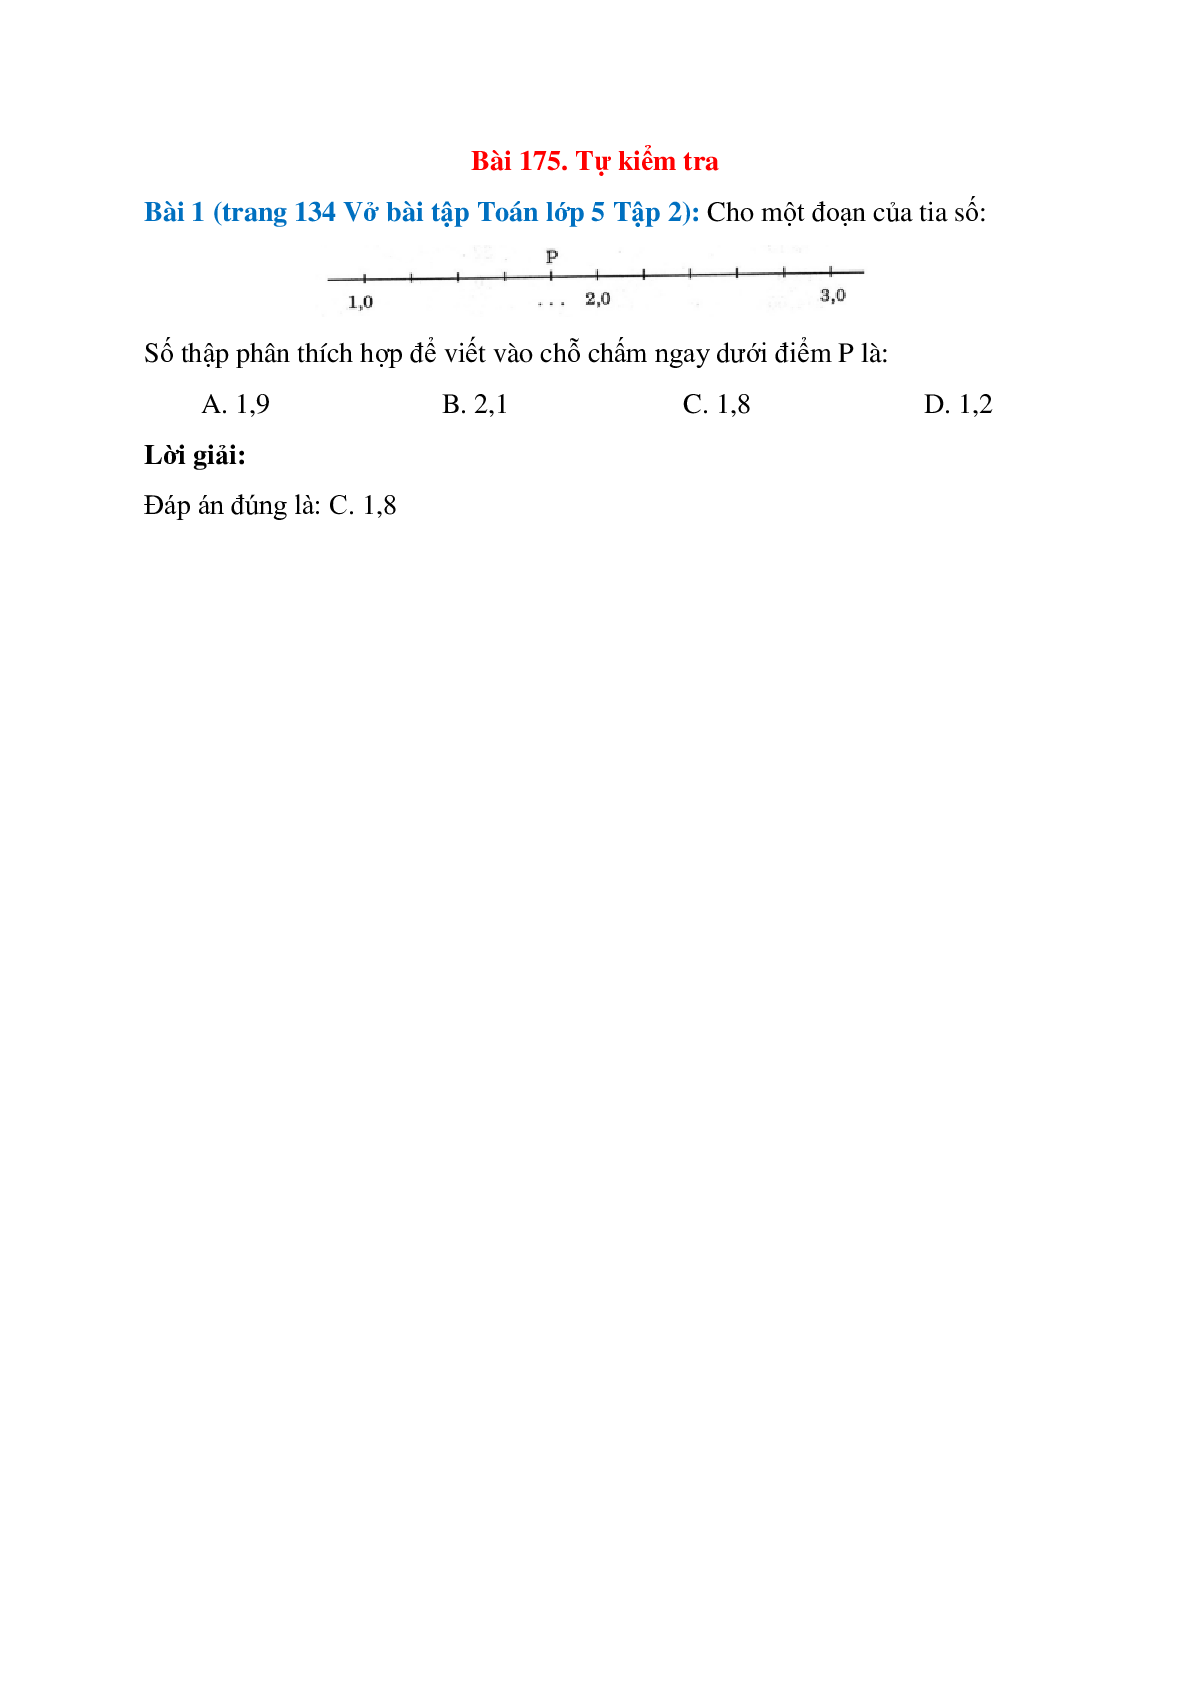 Cho một đoạn của tia số: Số thập phân thích hợp để viết vào chỗ chấm ngay dưới điểm P là: 1,9; 2,1   (trang 1)